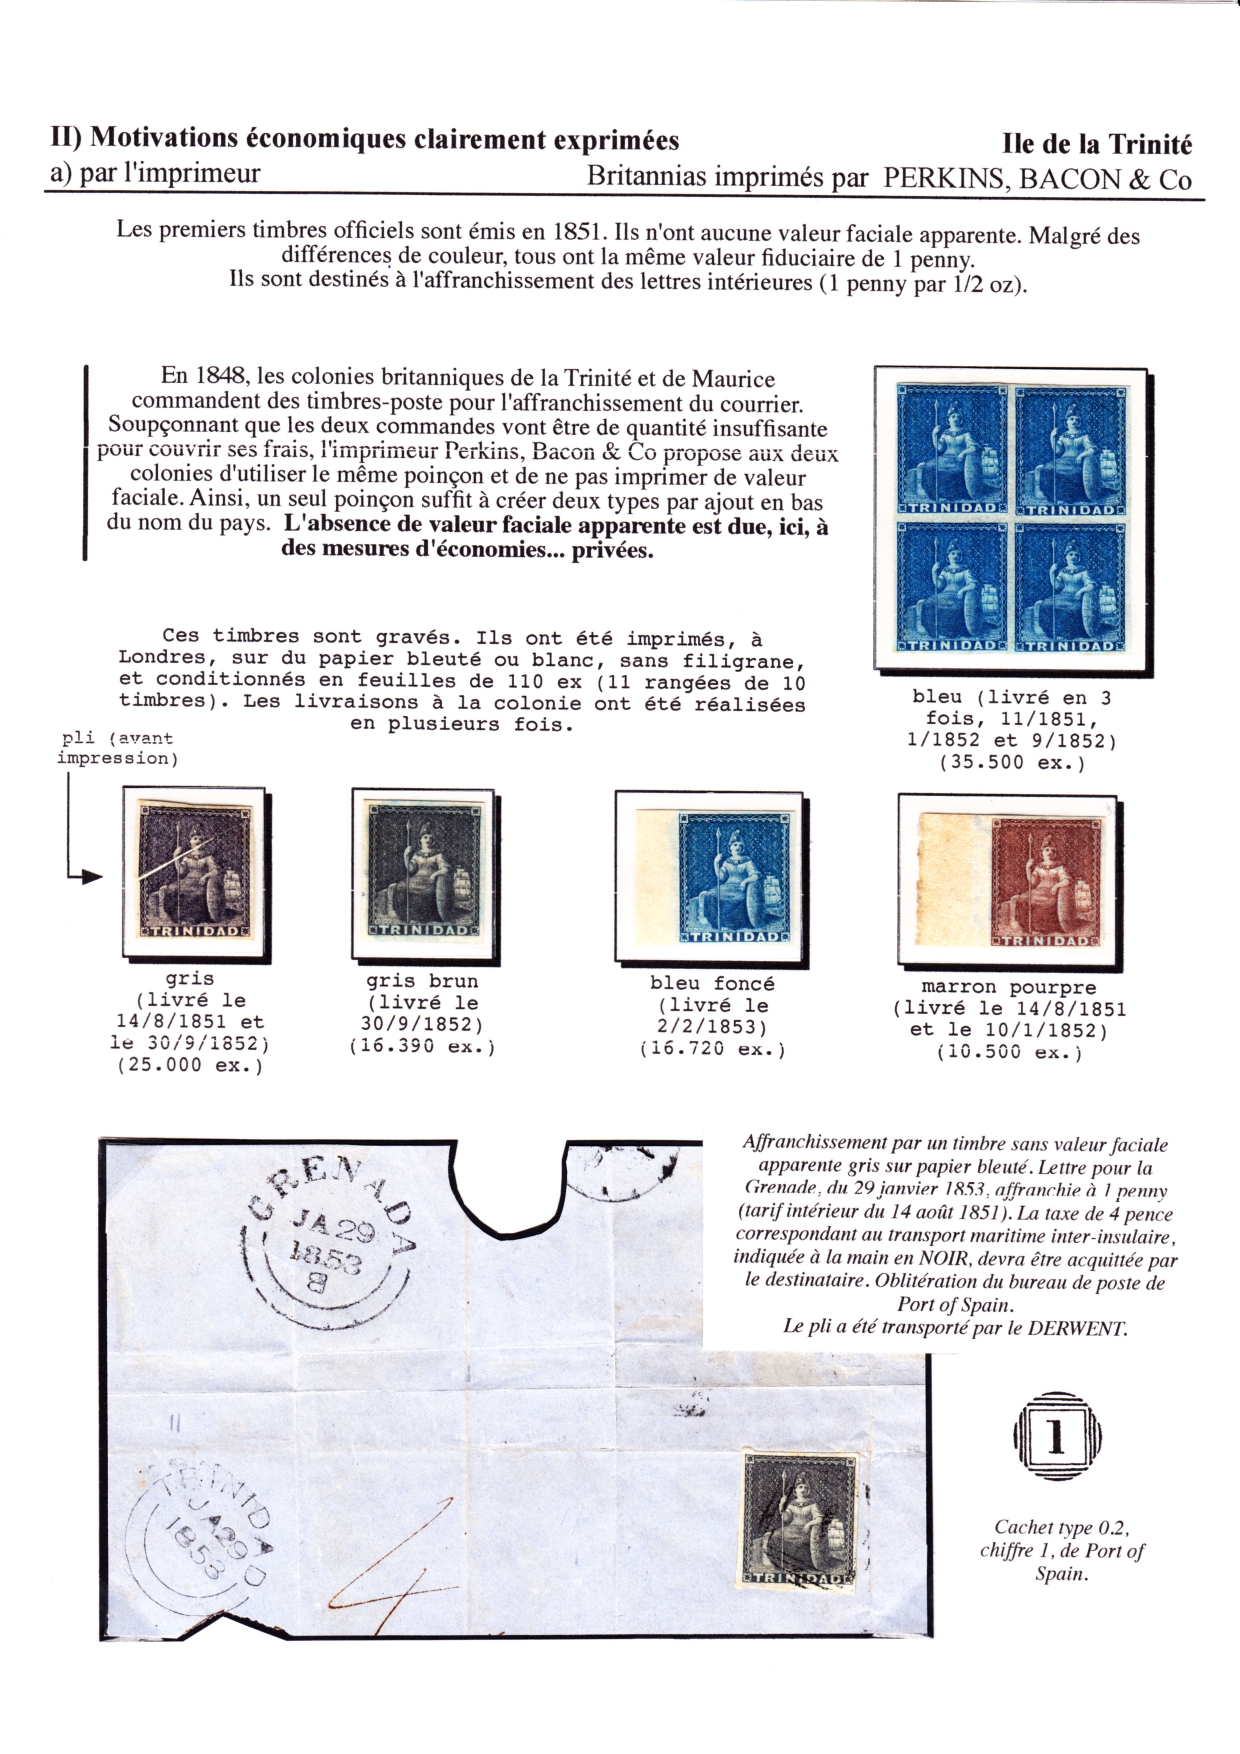 Les d��buts des timbres sans valeur faciale apparente p. 26